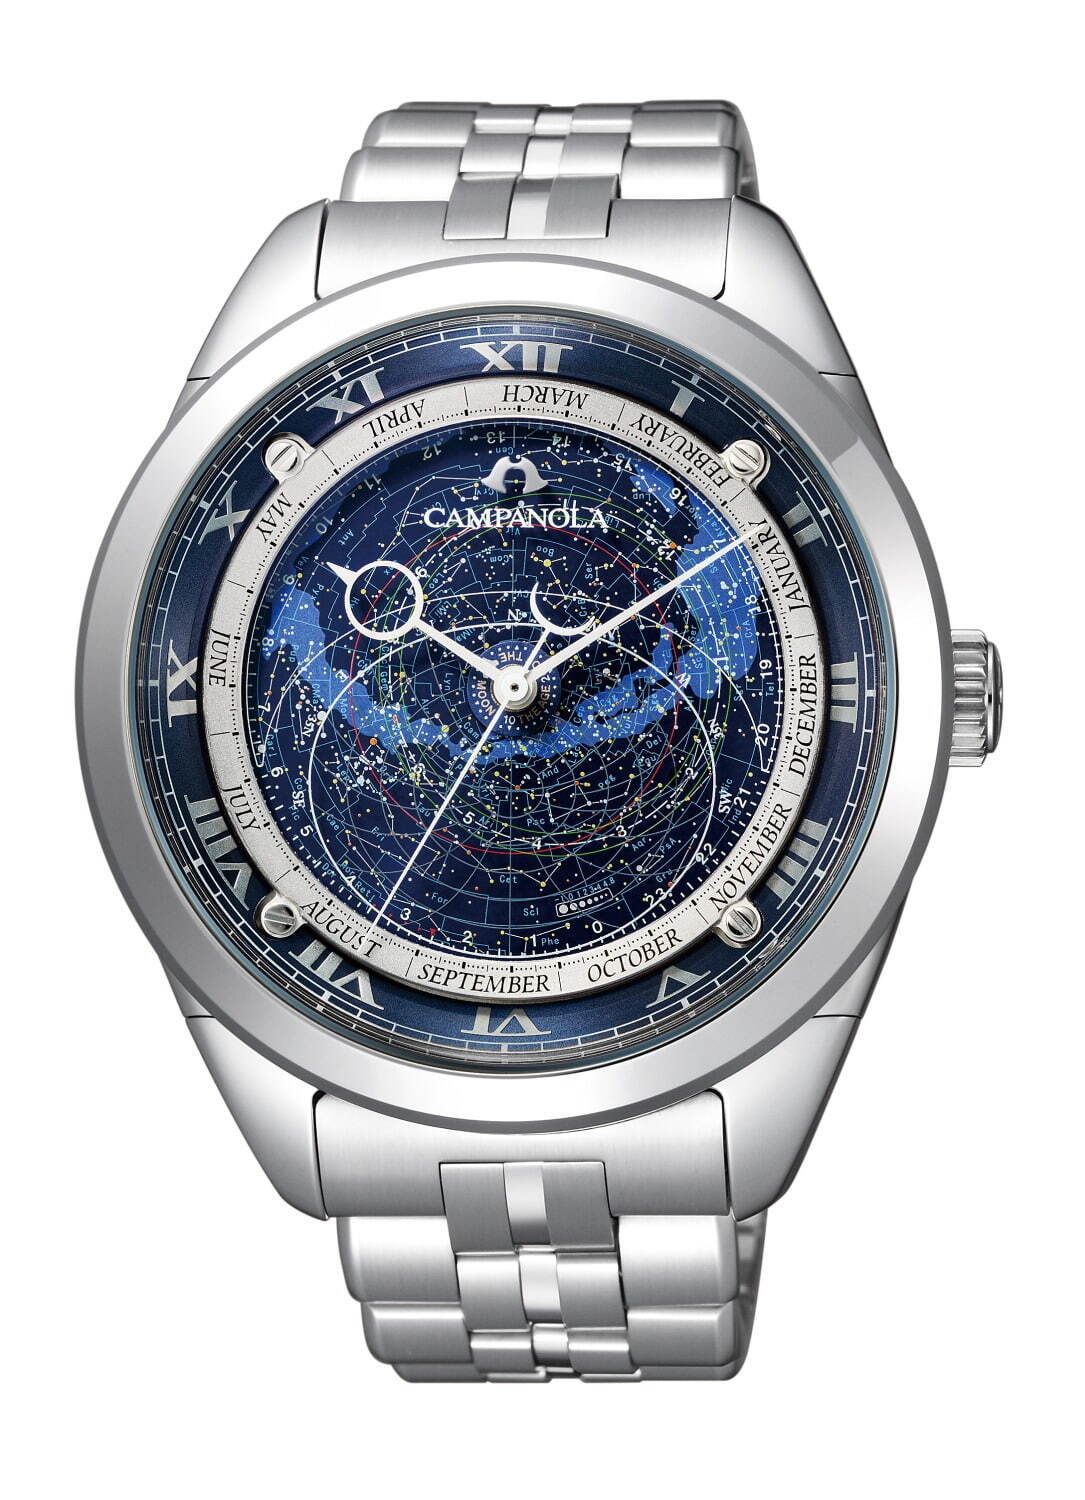 カンパノラの星座盤付き腕時計「コスモサイン」新作メタルバンドモデル、ブルーダイヤルで“星空”表現 - ファッションプレス